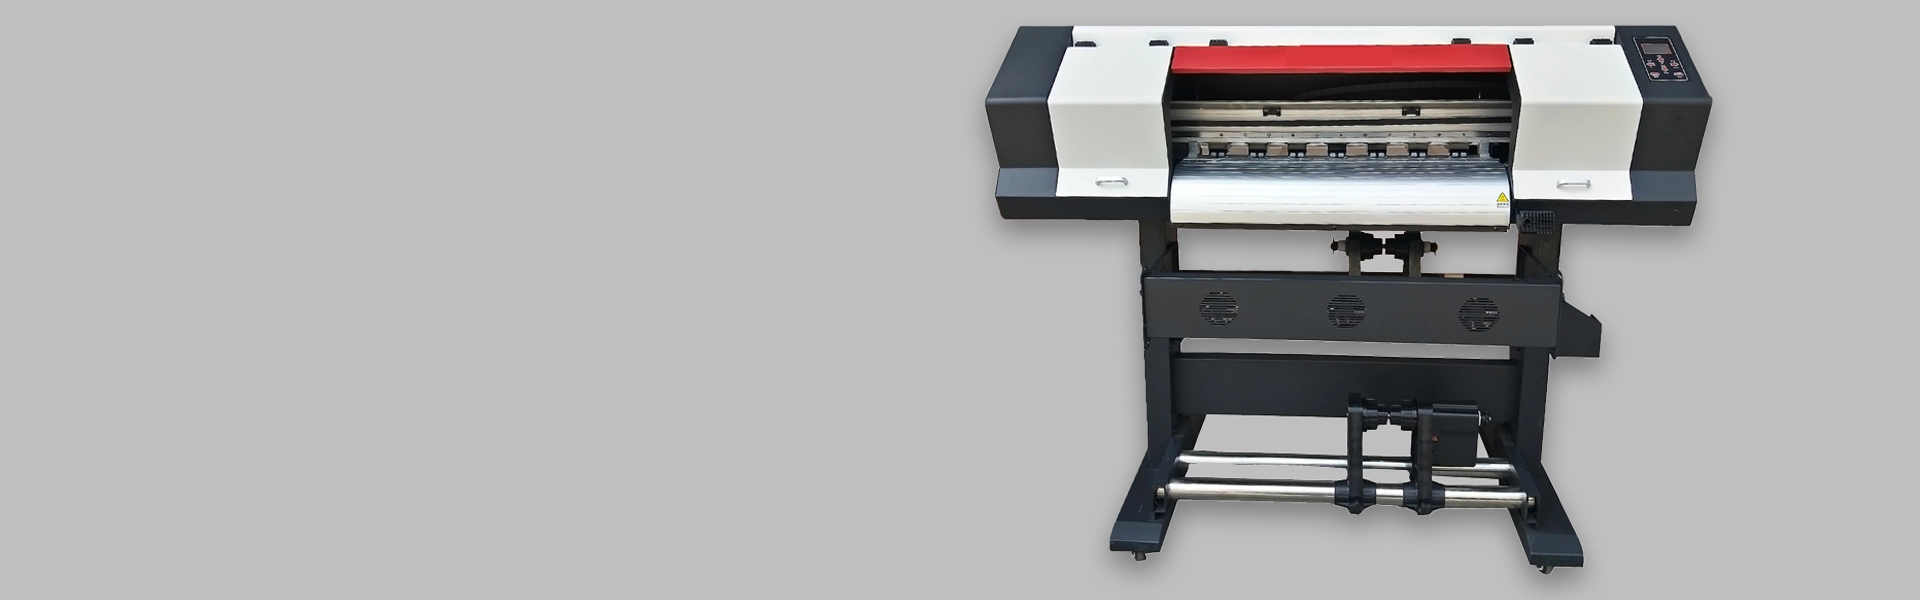 70cm XP600 Printer